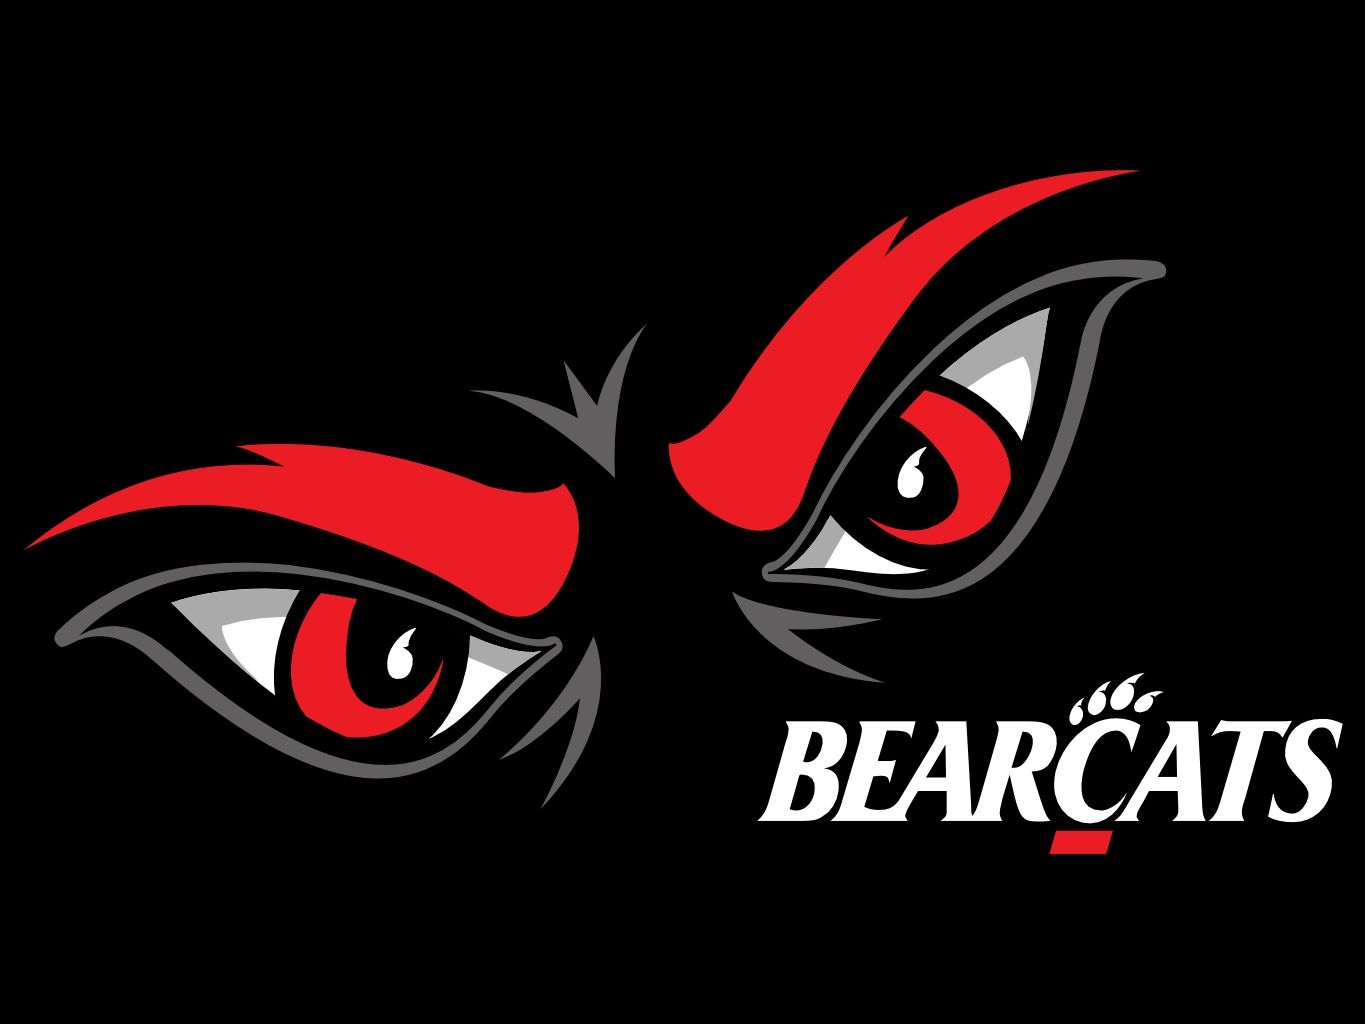 Best Cincinnati Bearcats ideas. cincinnati bearcats, bearcats, cincinnati